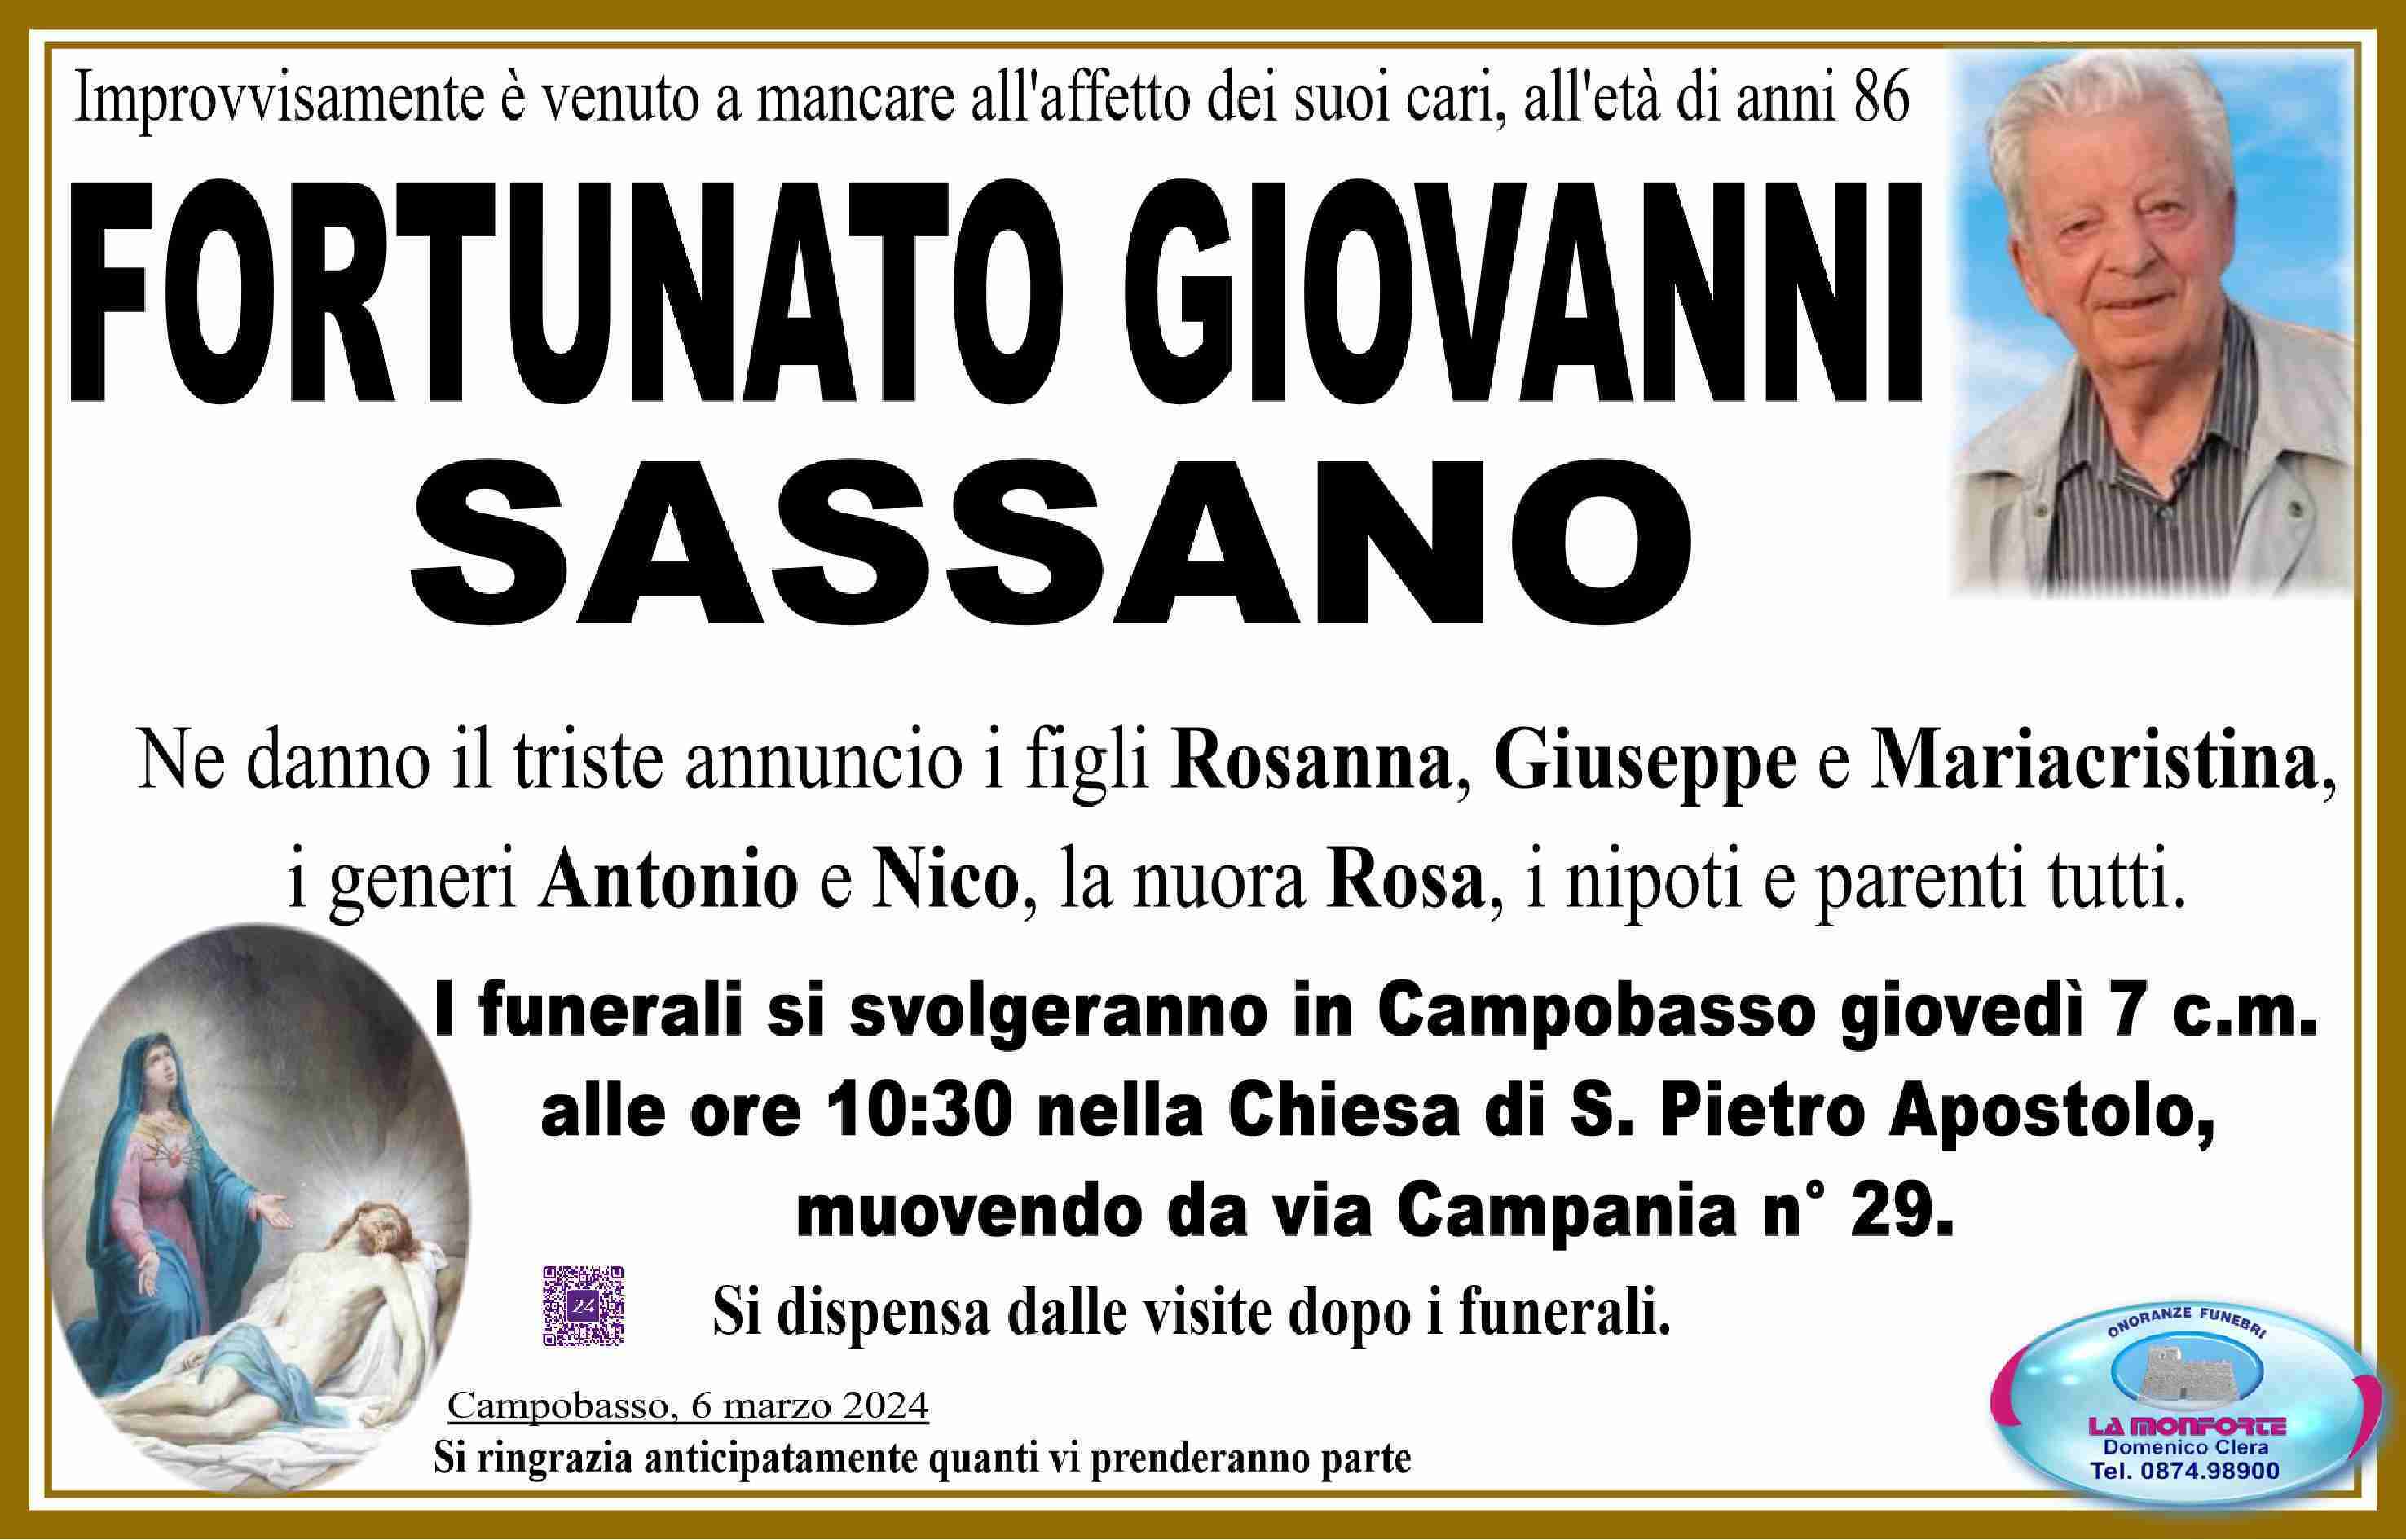 Fortunato Giovanni Sassano